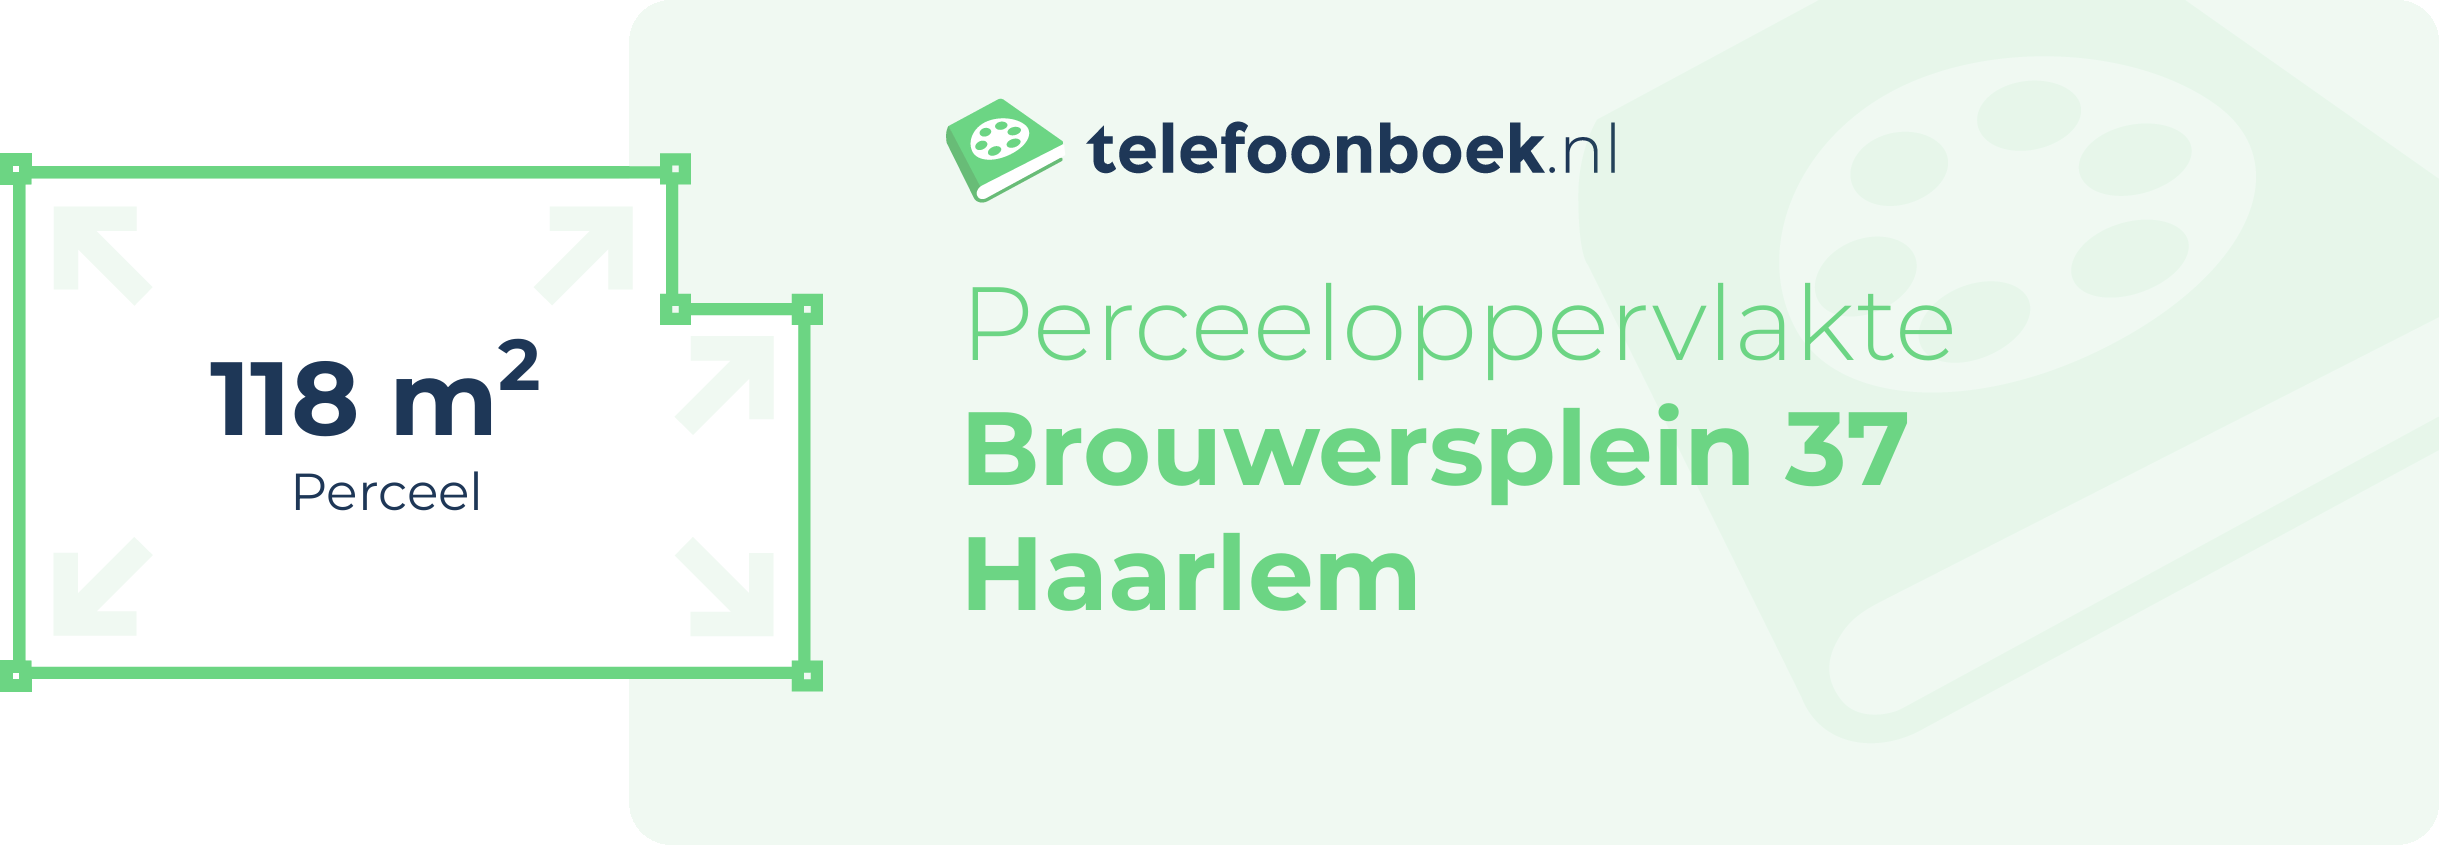 Perceeloppervlakte Brouwersplein 37 Haarlem